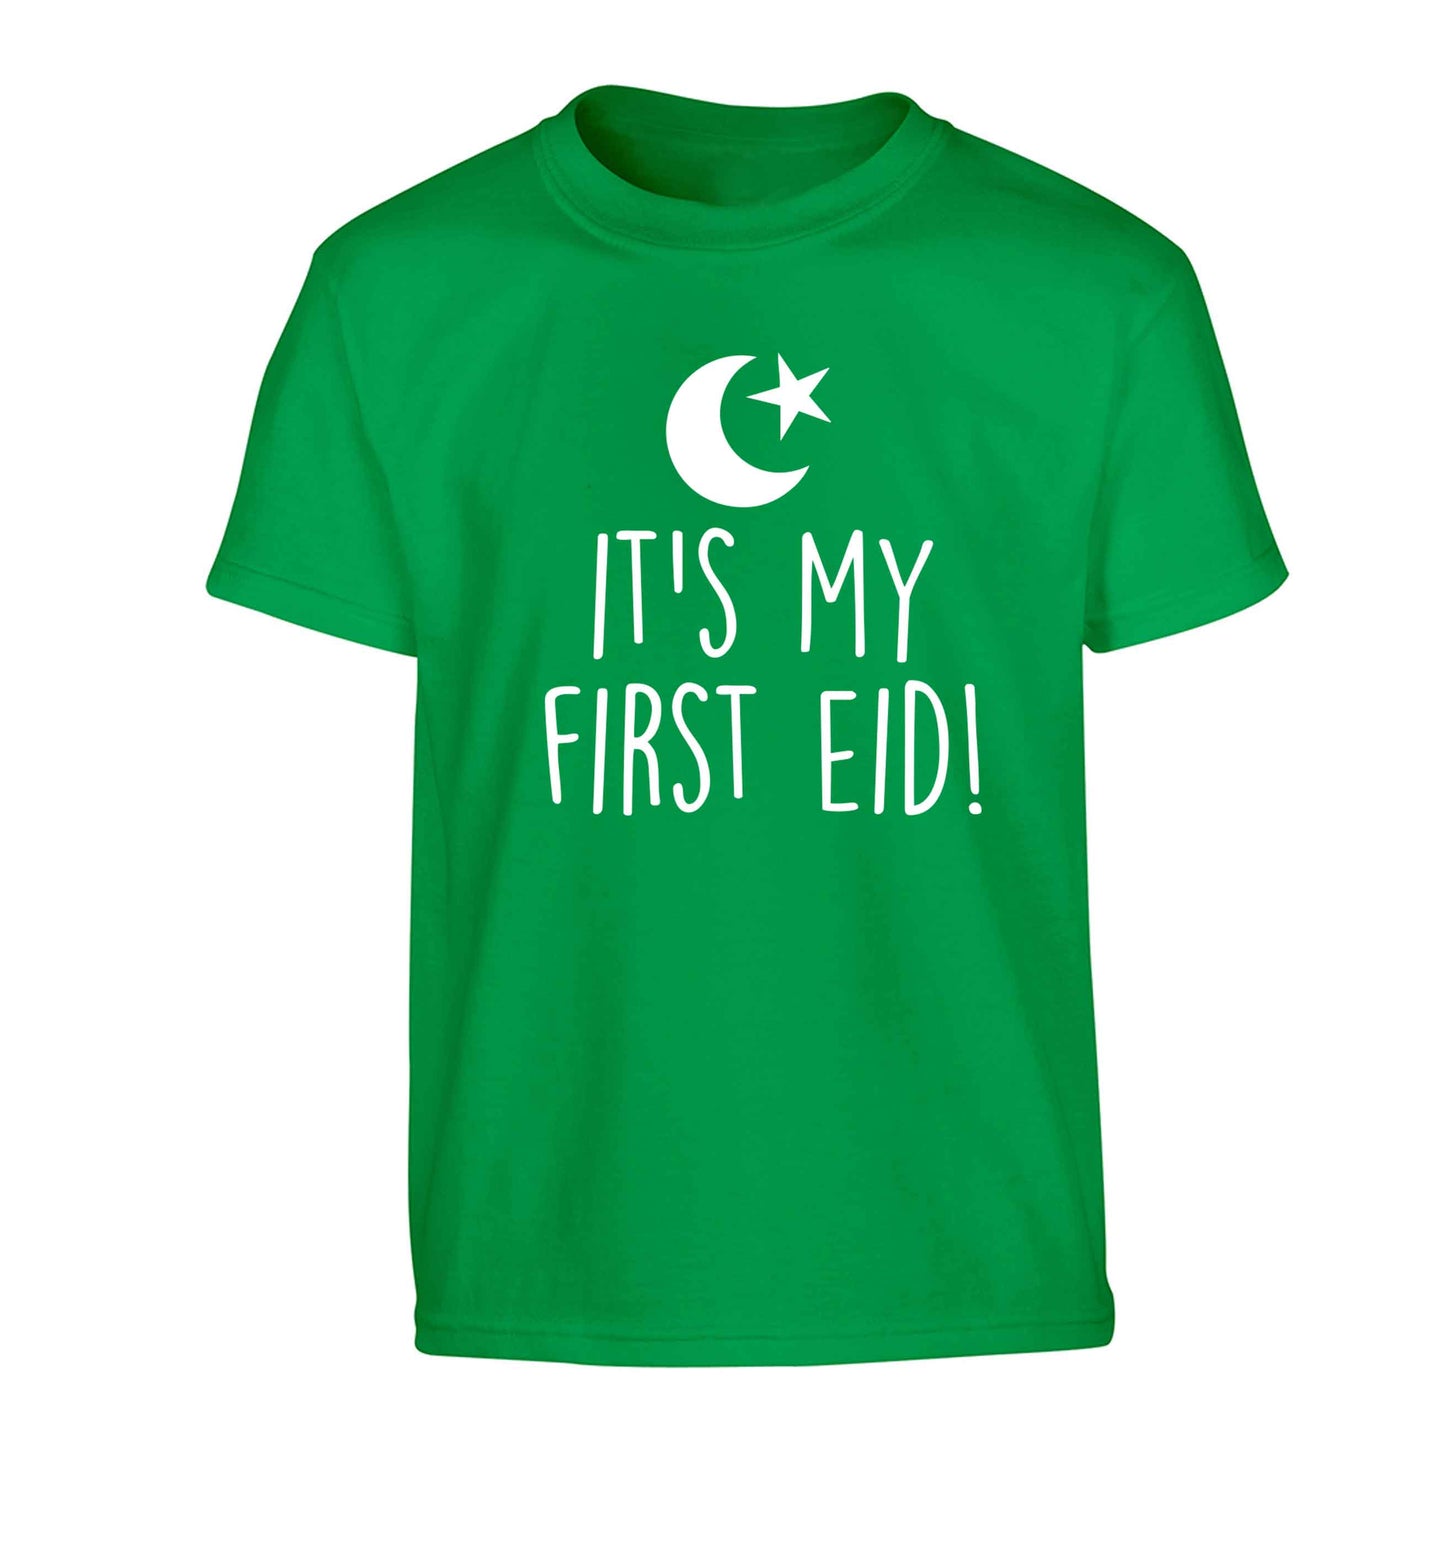 It's my first Eid Children's green Tshirt 12-13 Years